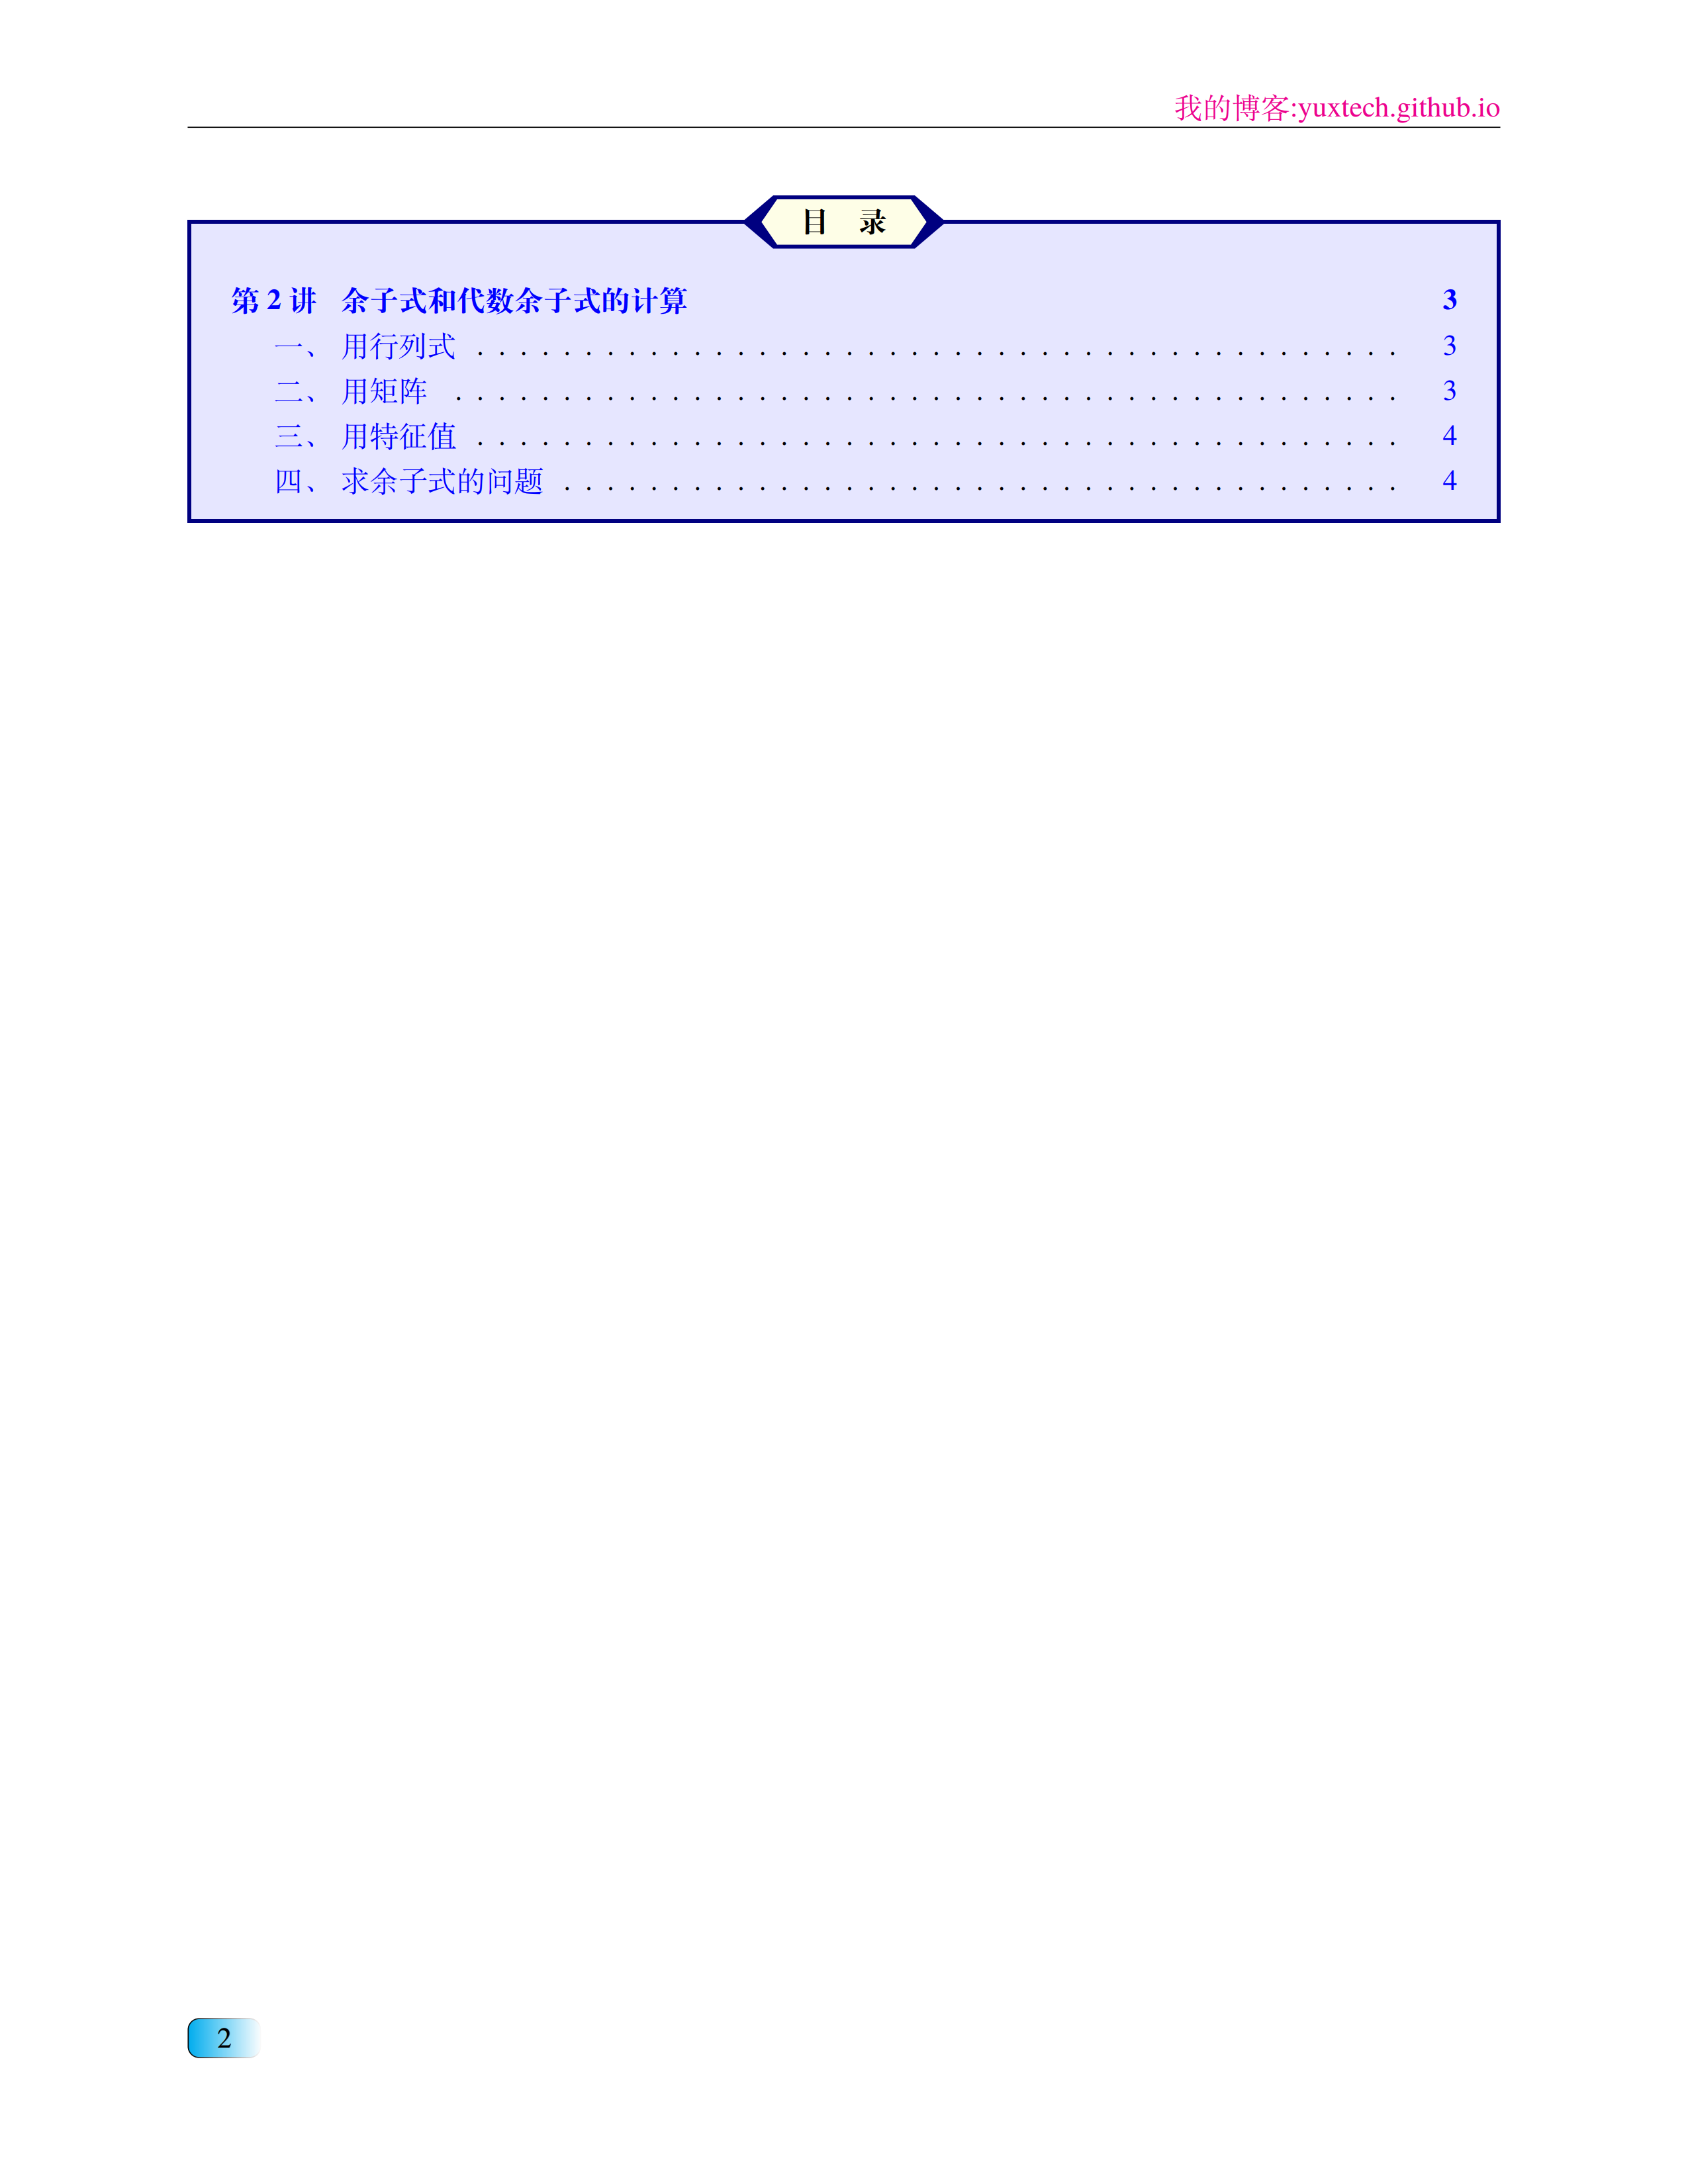 定制一个新版张宇考研数学书籍的LaTeX格式 - 向老师